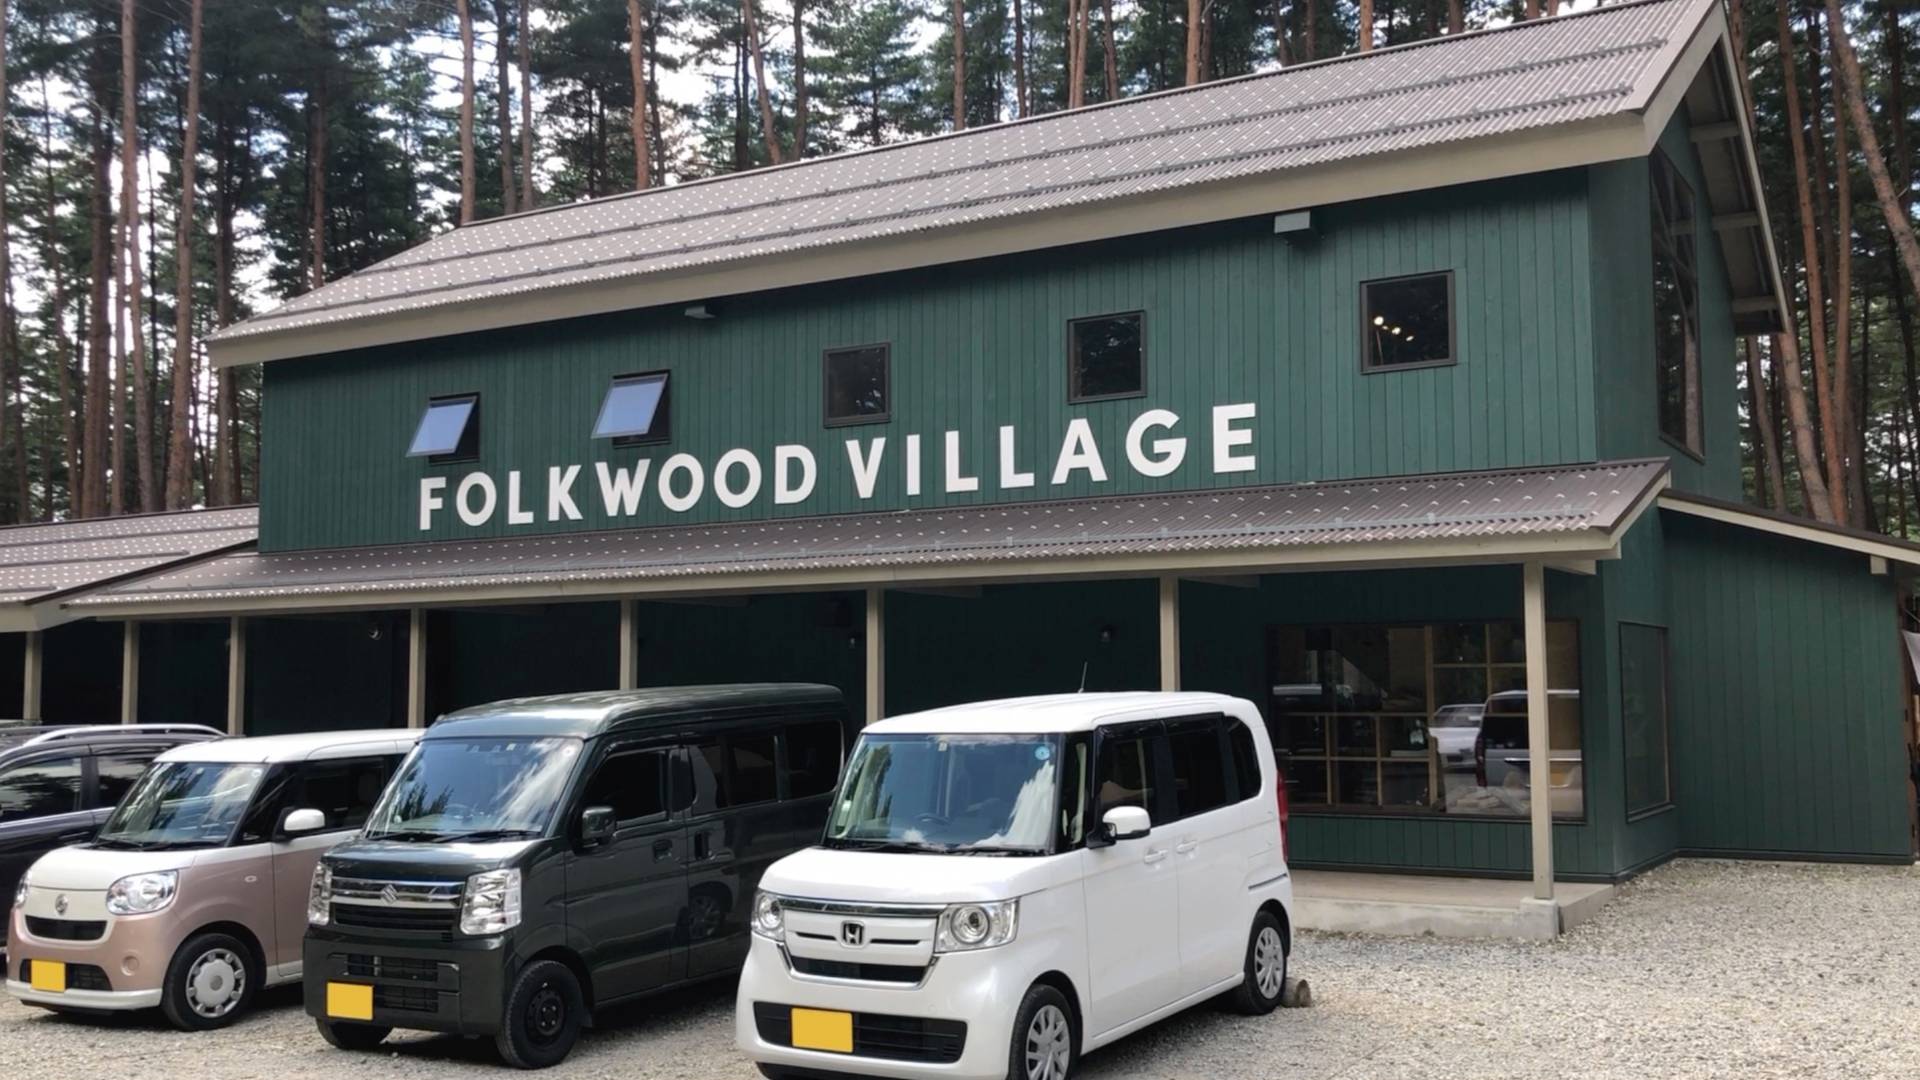 【軽バンキャンプ13-1】FOLKWOOD VILLAGE八ヶ岳で車中泊キャンプ(前編)